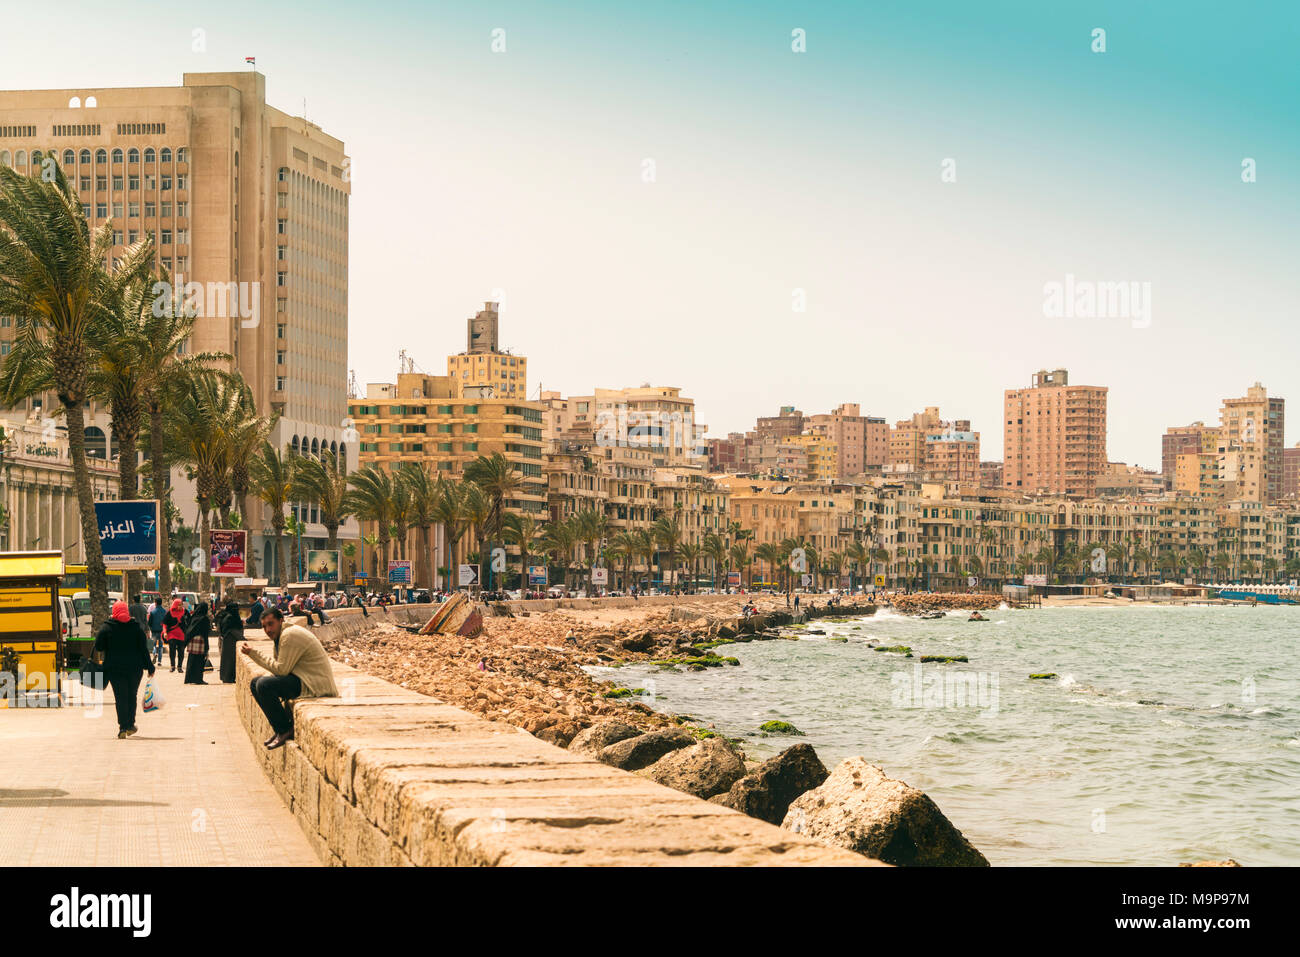 View of Alexandria during daytime, Egypt Stock Photo